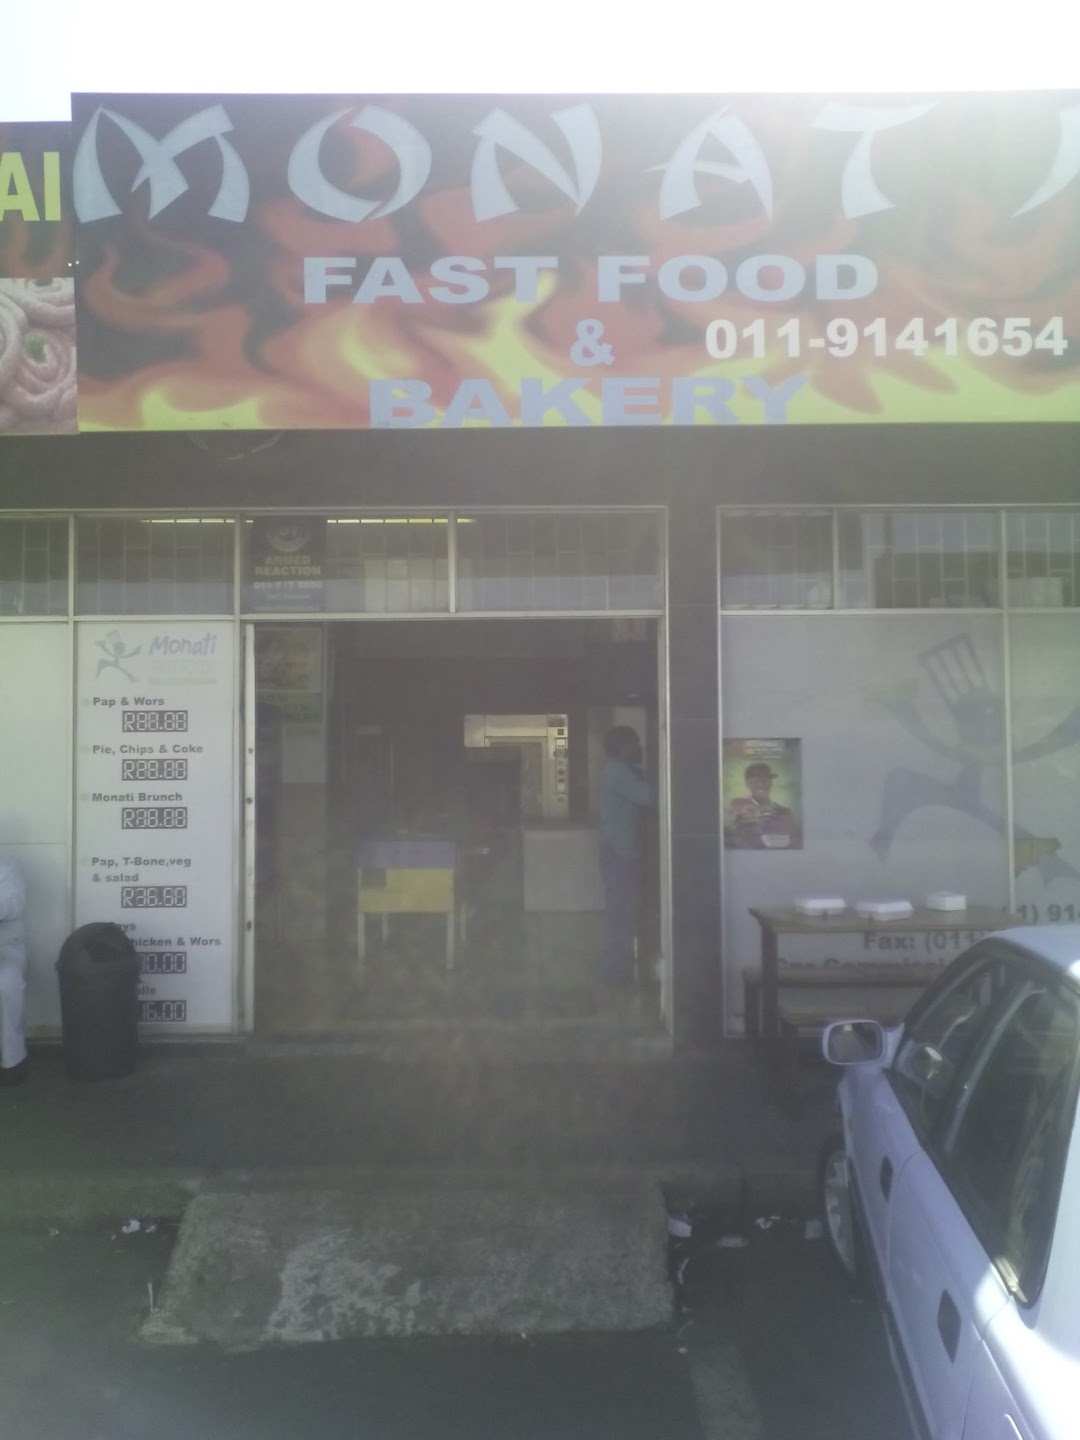 Monati Fast Food & Bakery